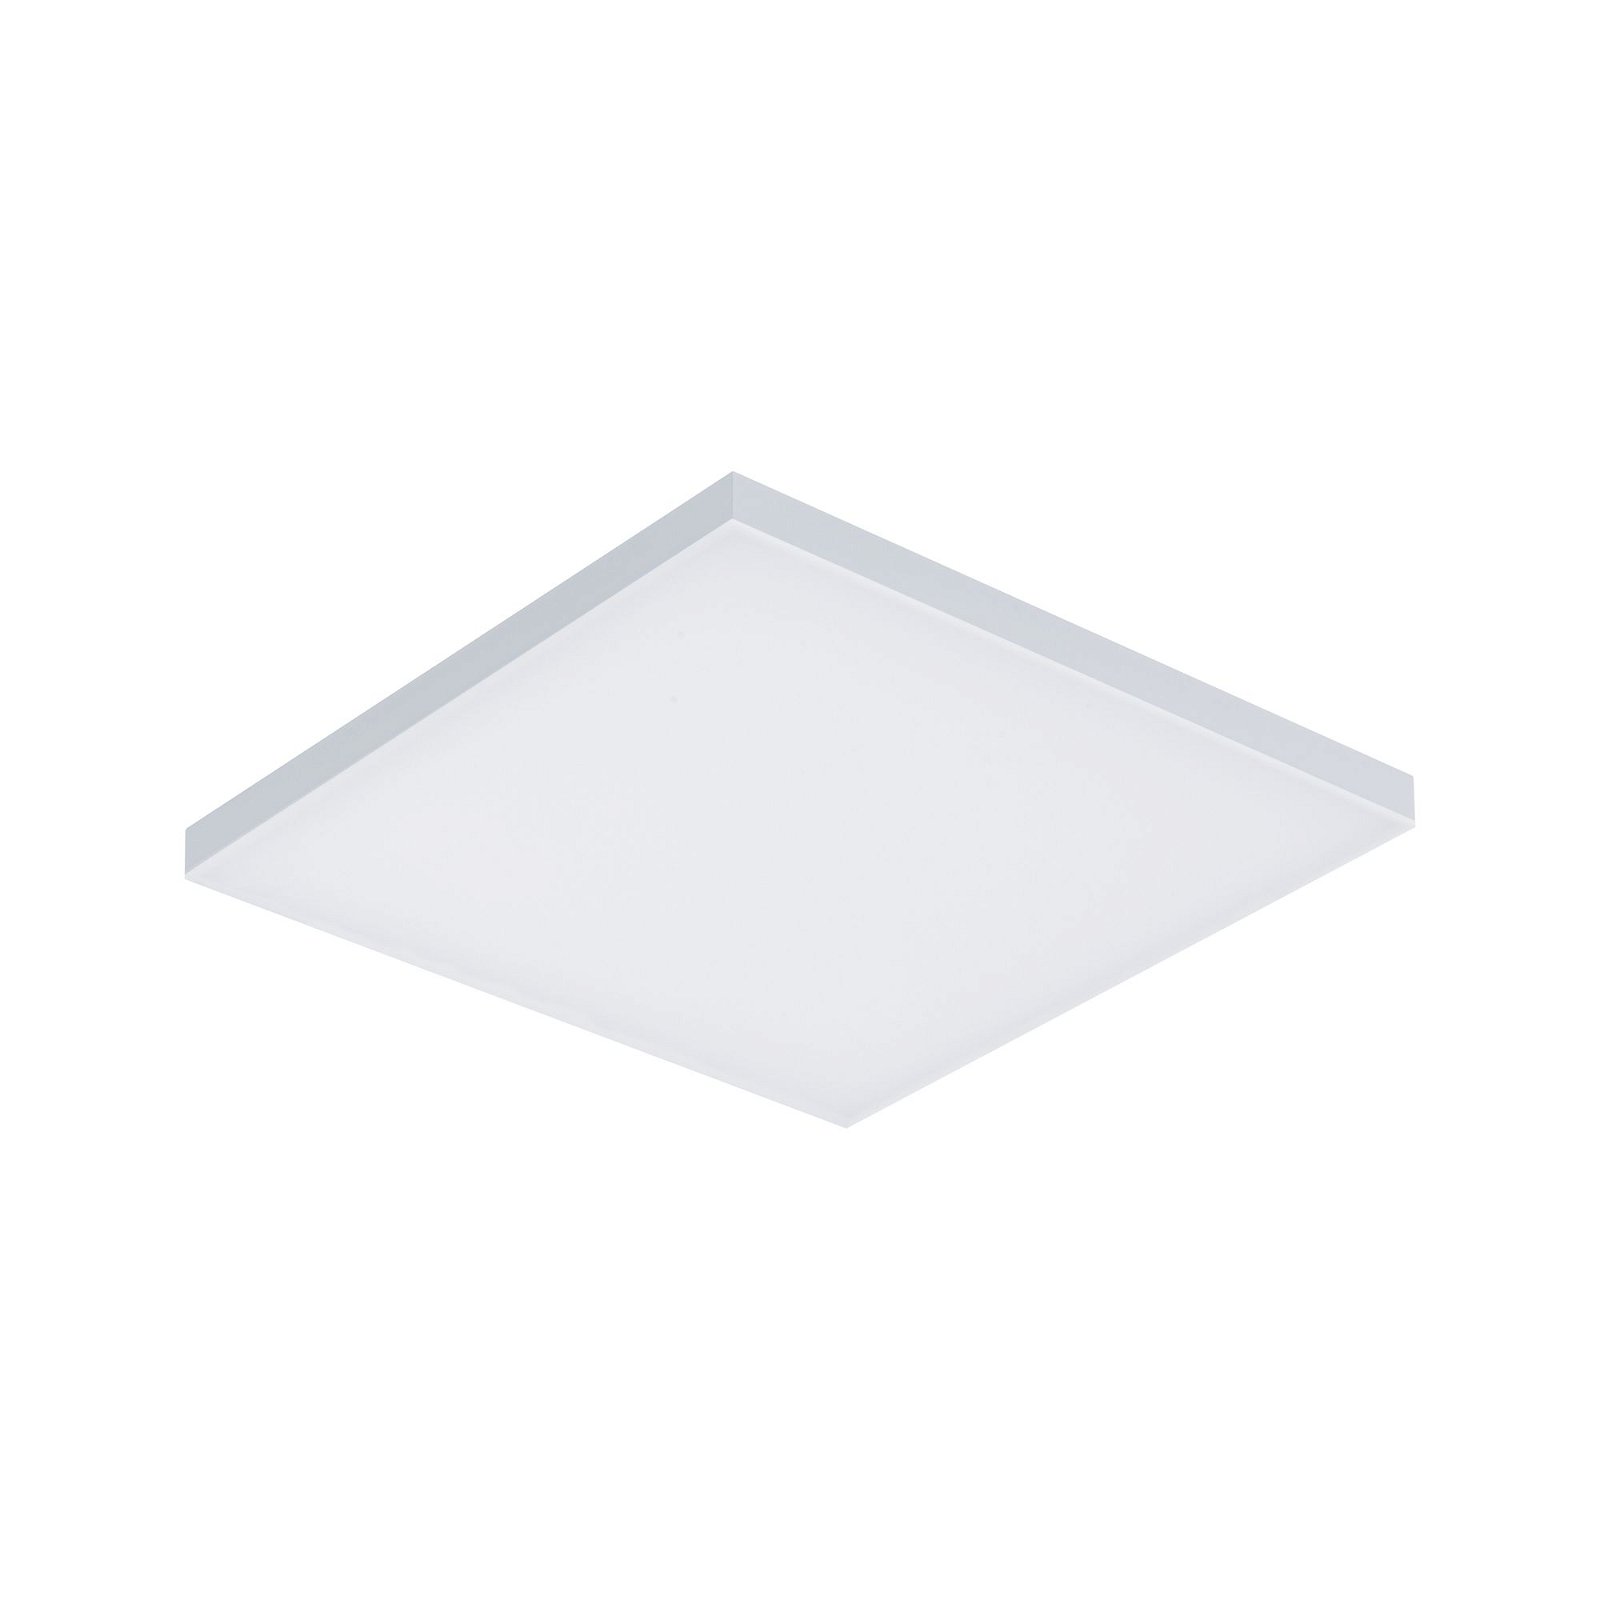 LED Panel Smart Home Zigbee Velora square 295x295mm Tunable White Matt white